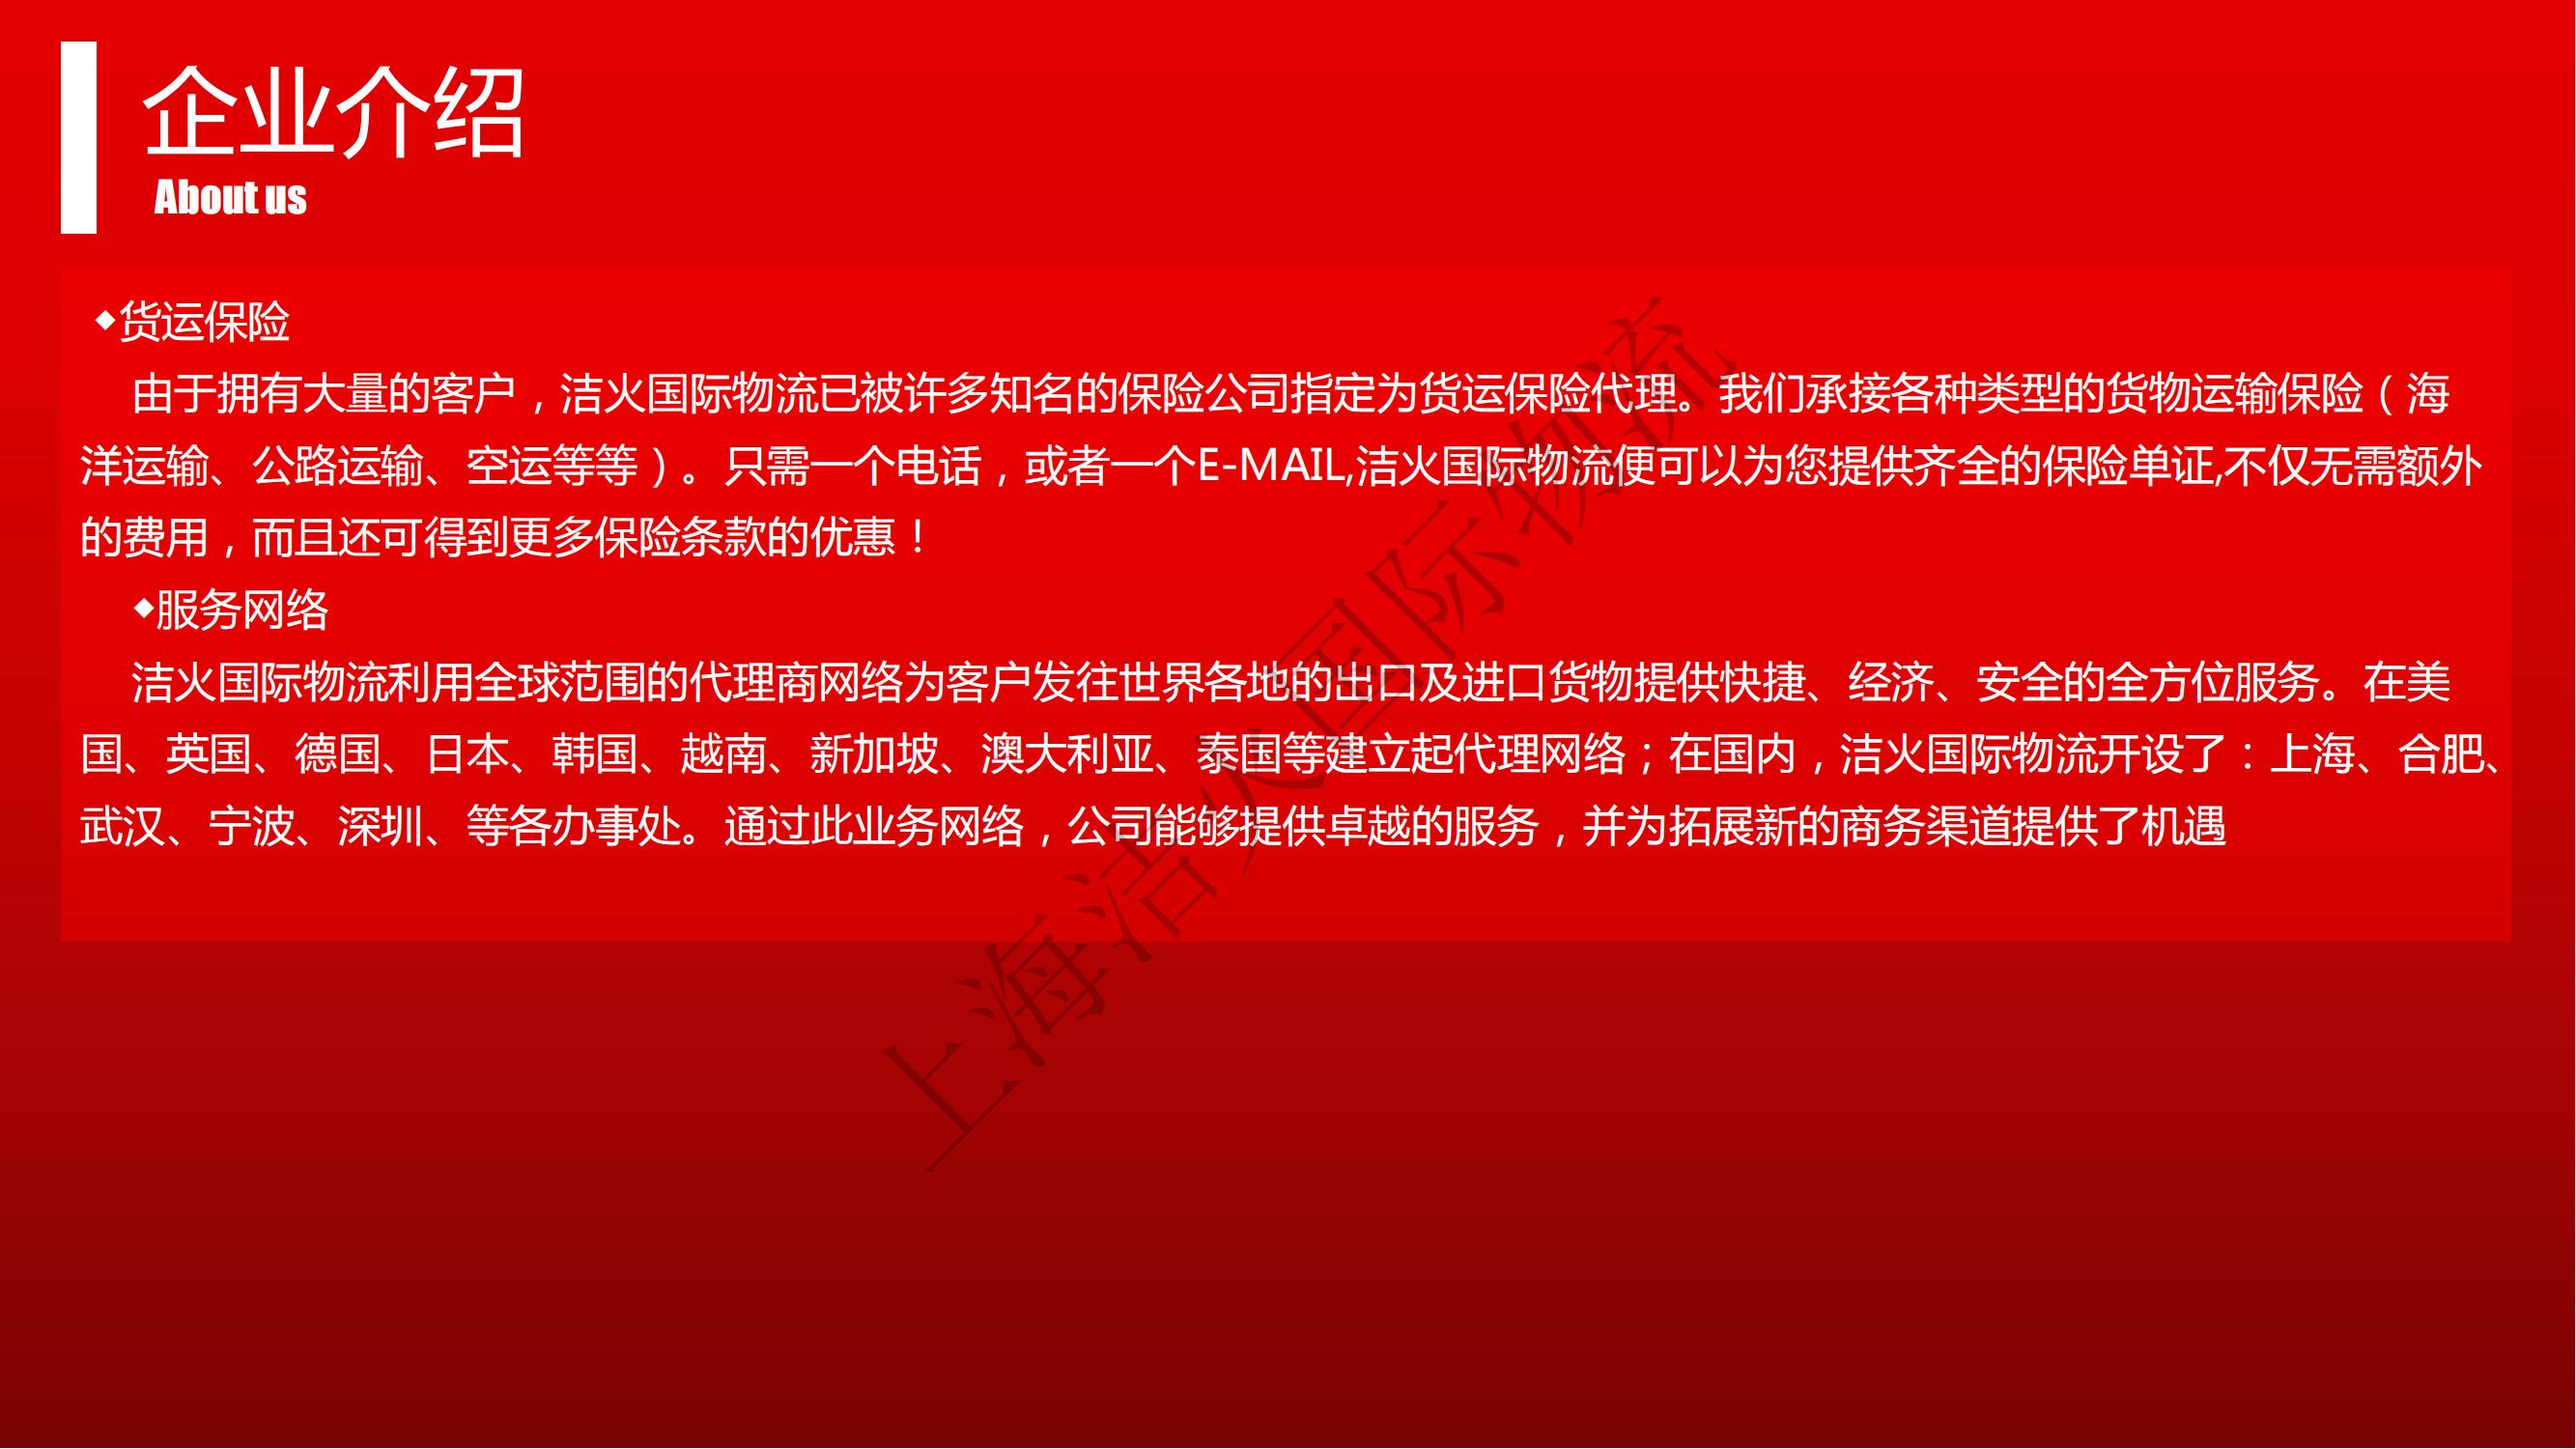 上海洁火国际物流有限公司(1)_05.jpg